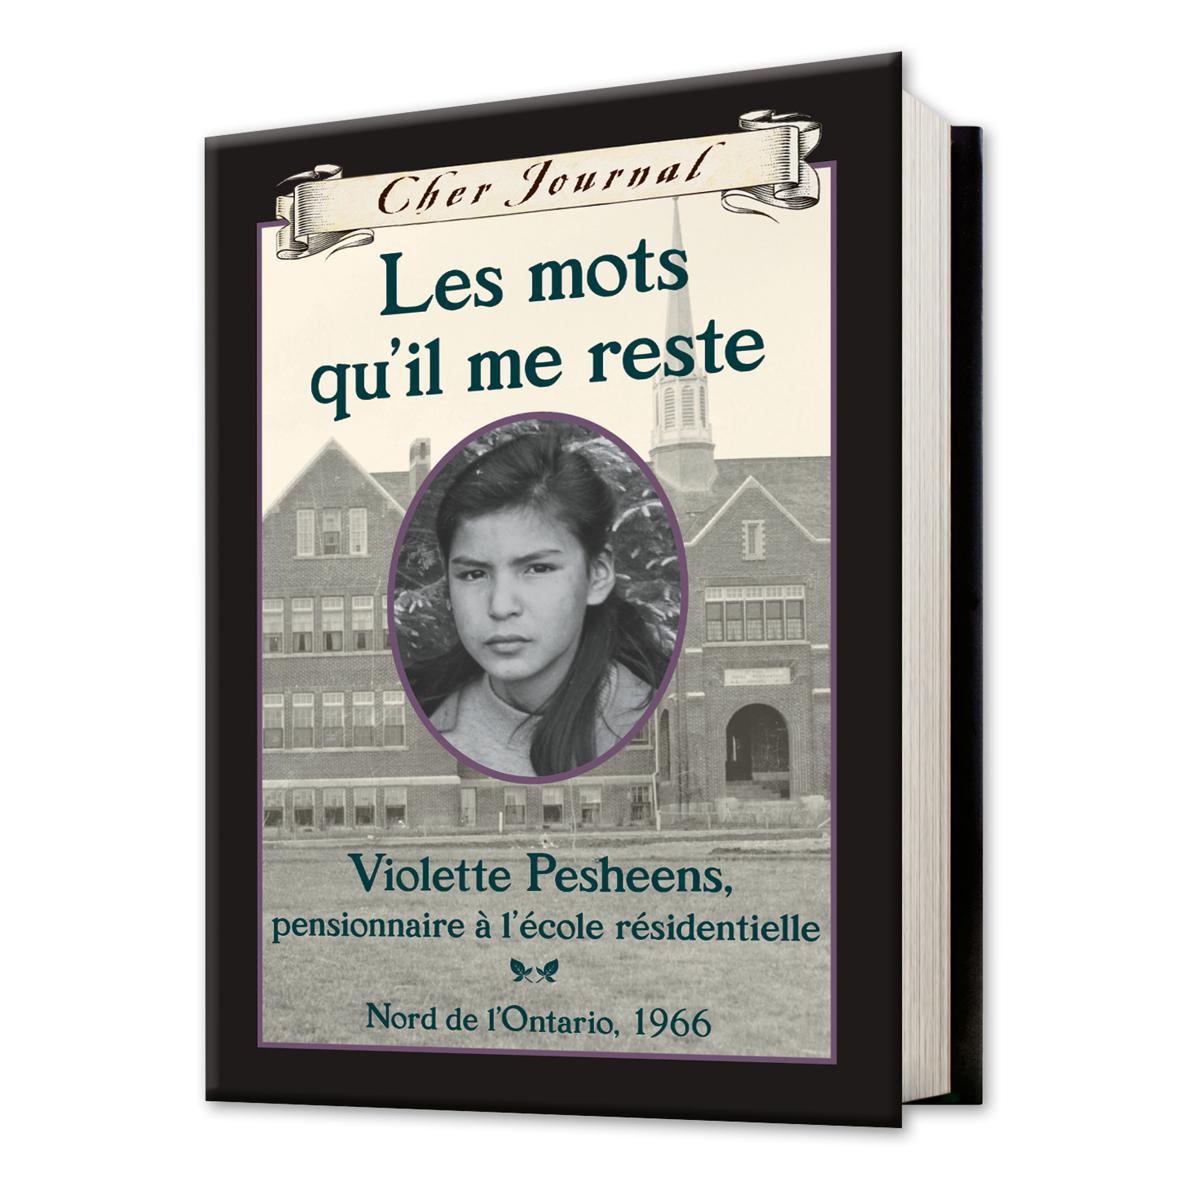  Cher Journal : Les mots qu'il me reste  - Violette Pesheens, pensionnaire à l'école résidentielle, Nord de l'Ontario, 1966